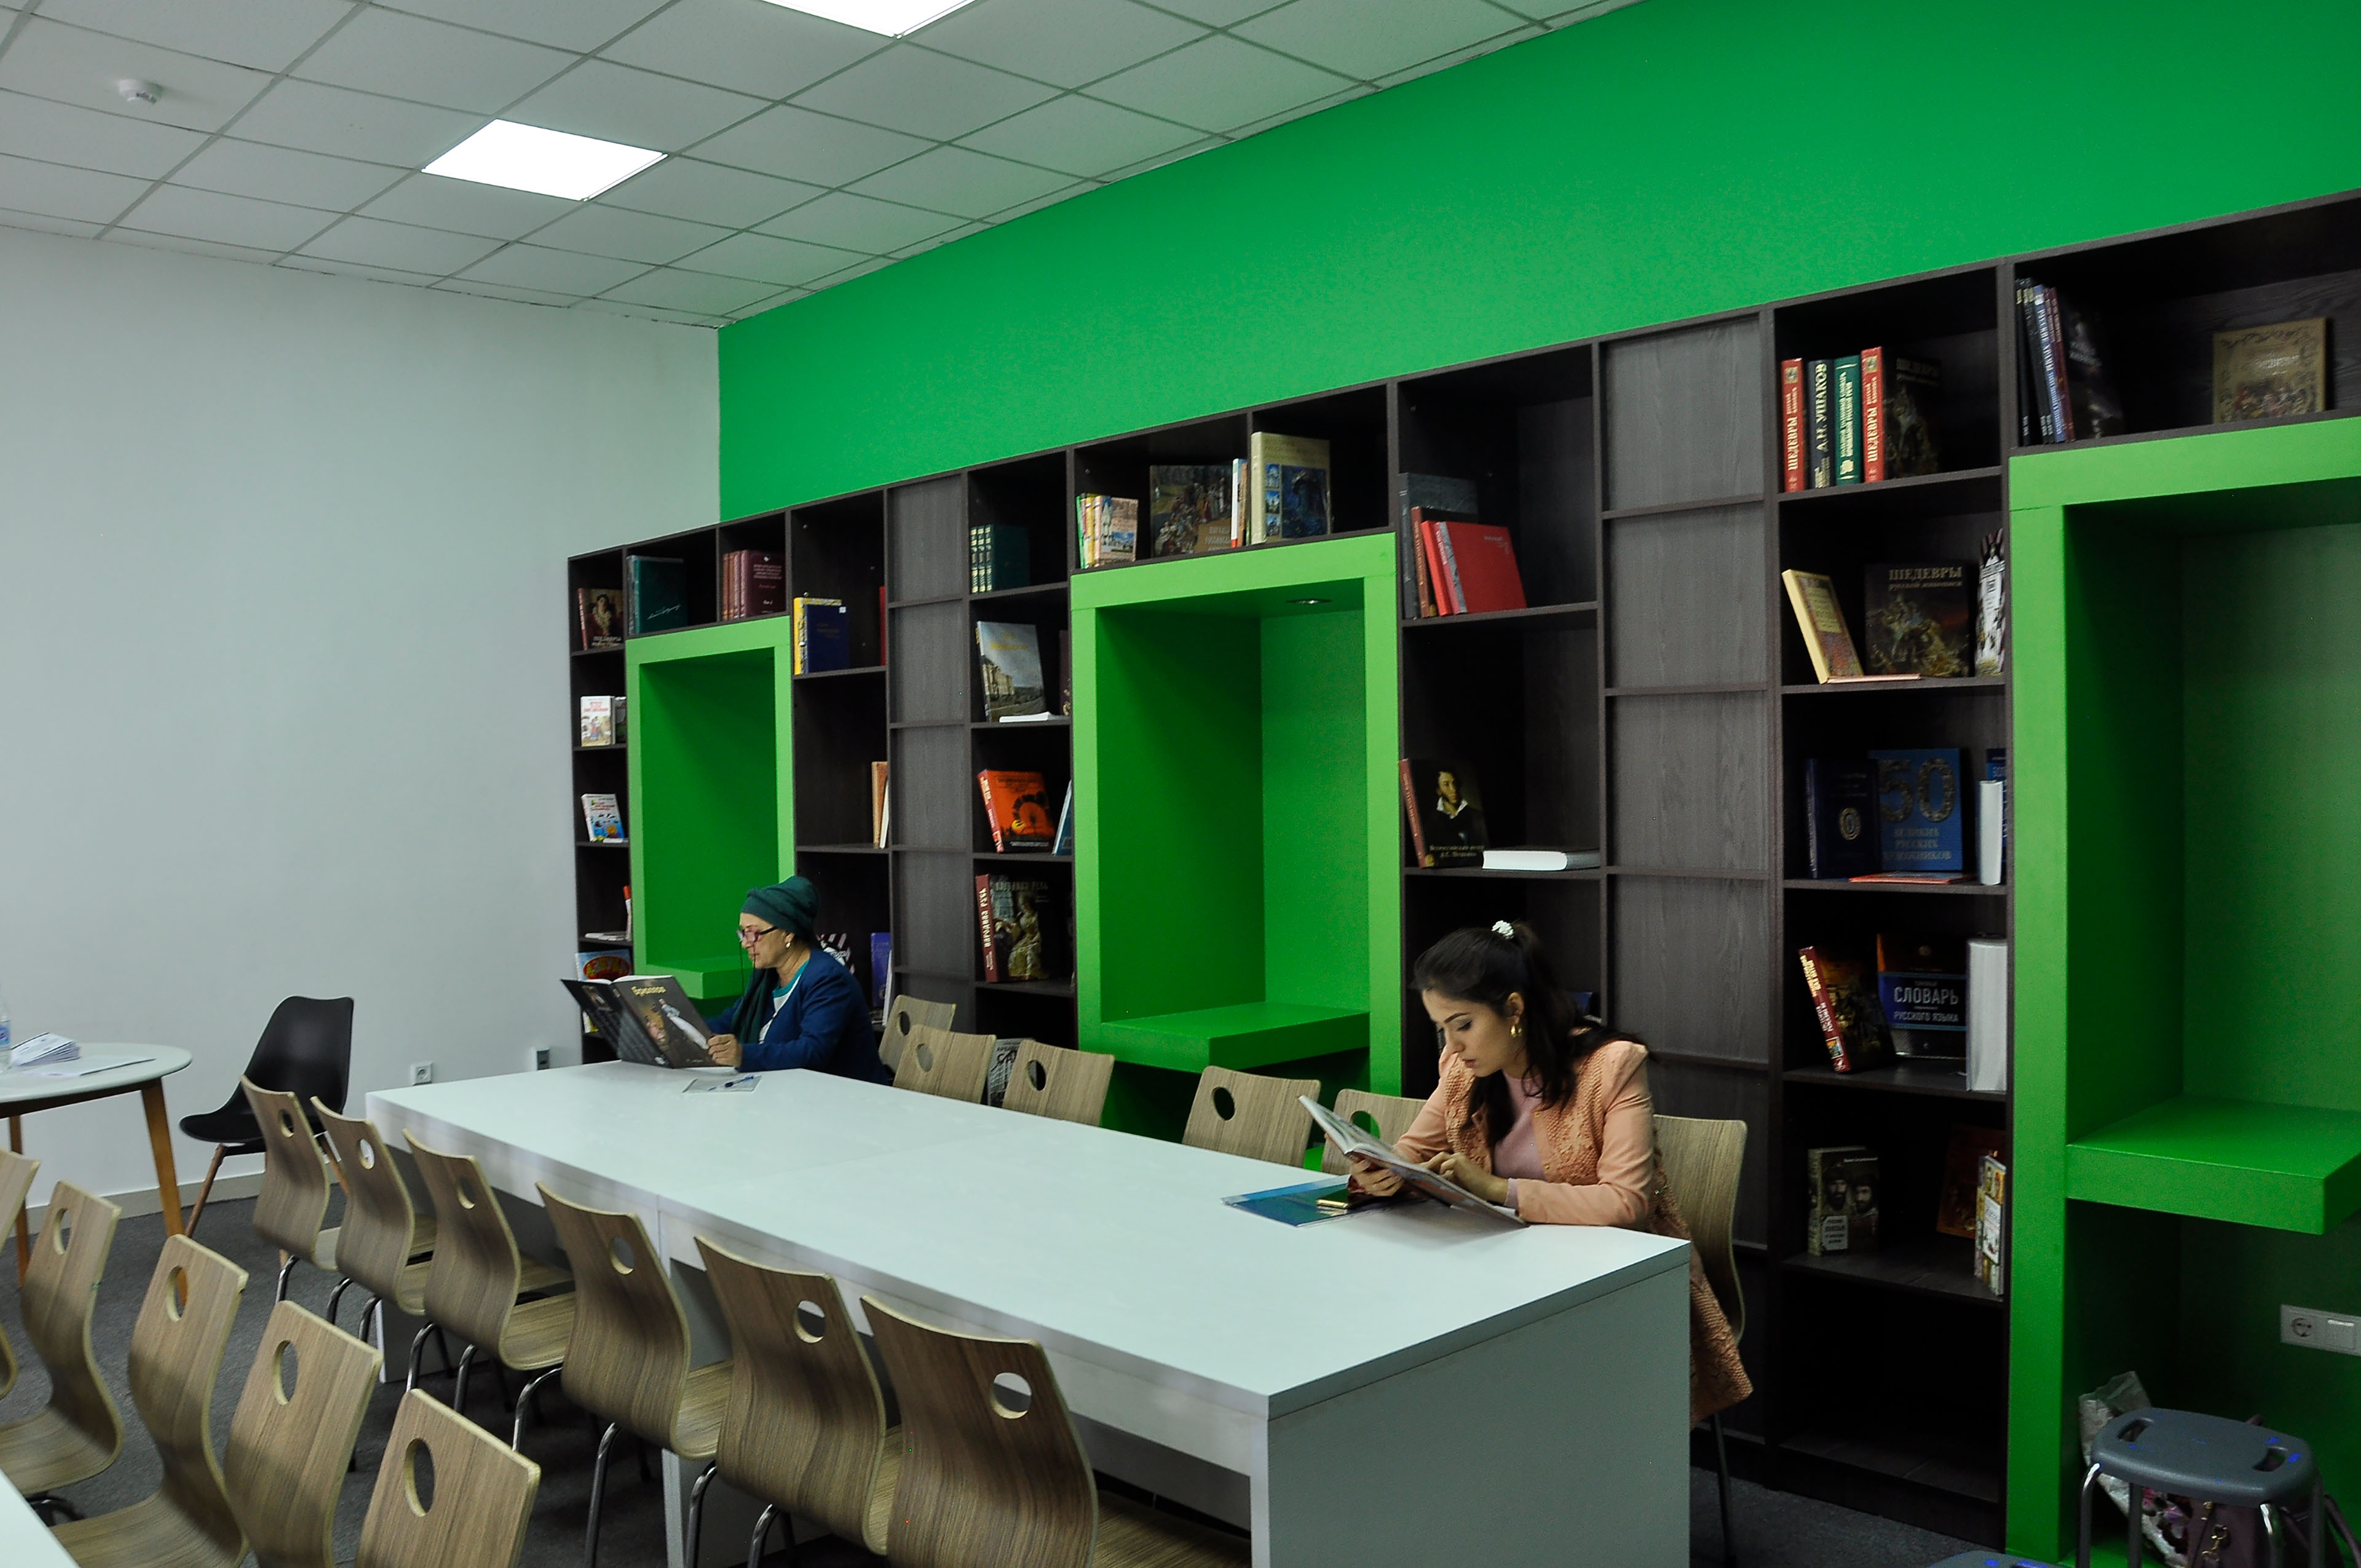 фото: Обмен опытом и повышение квалификации: в Таджикистане прошла серия мероприятий для педагогов-русистов